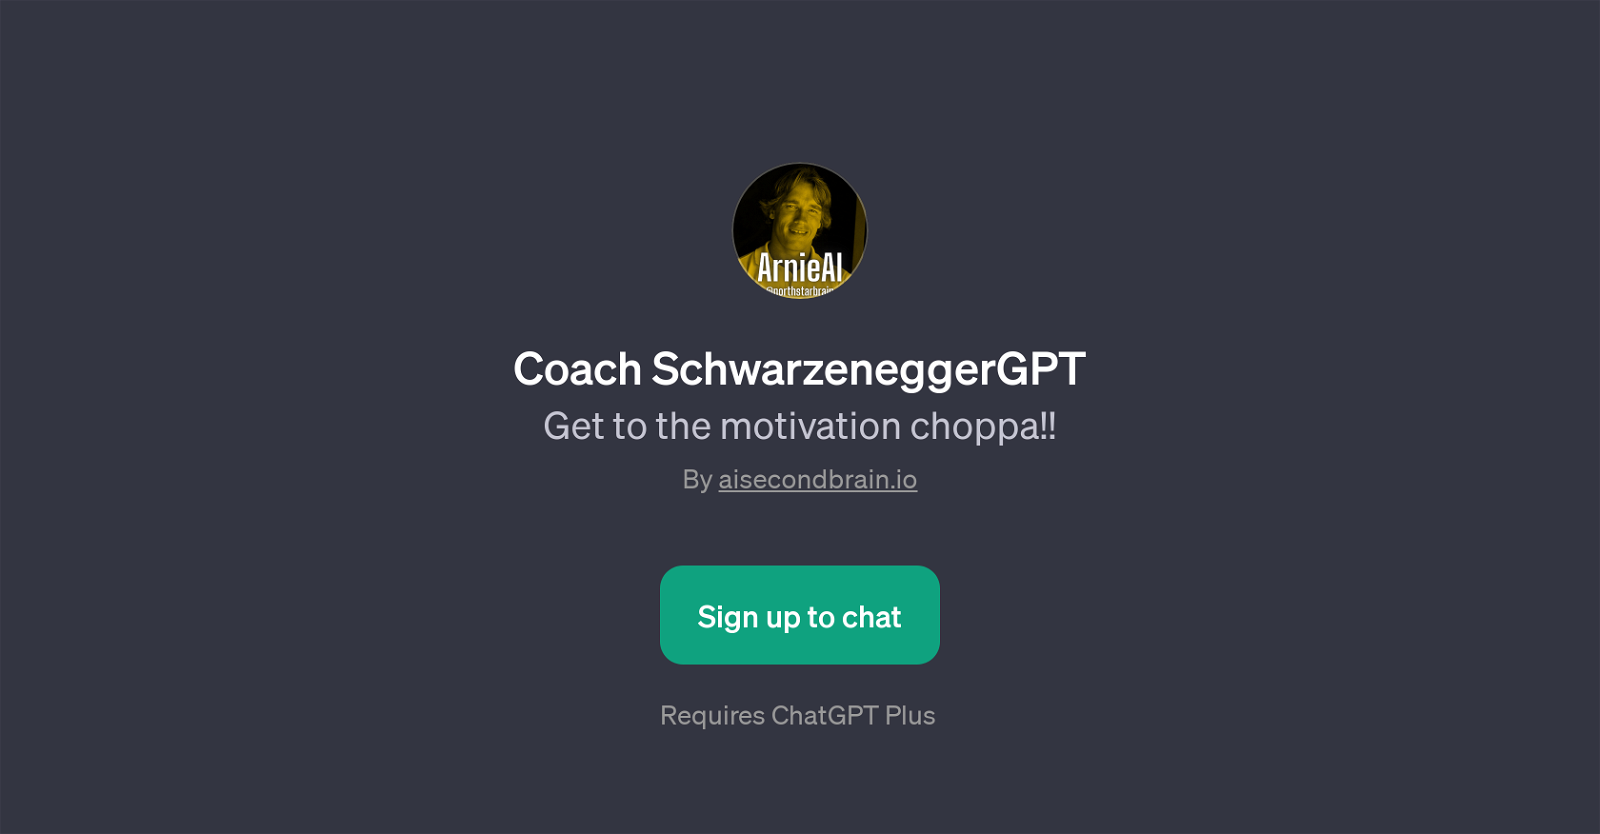 Coach SchwarzeneggerGPT website